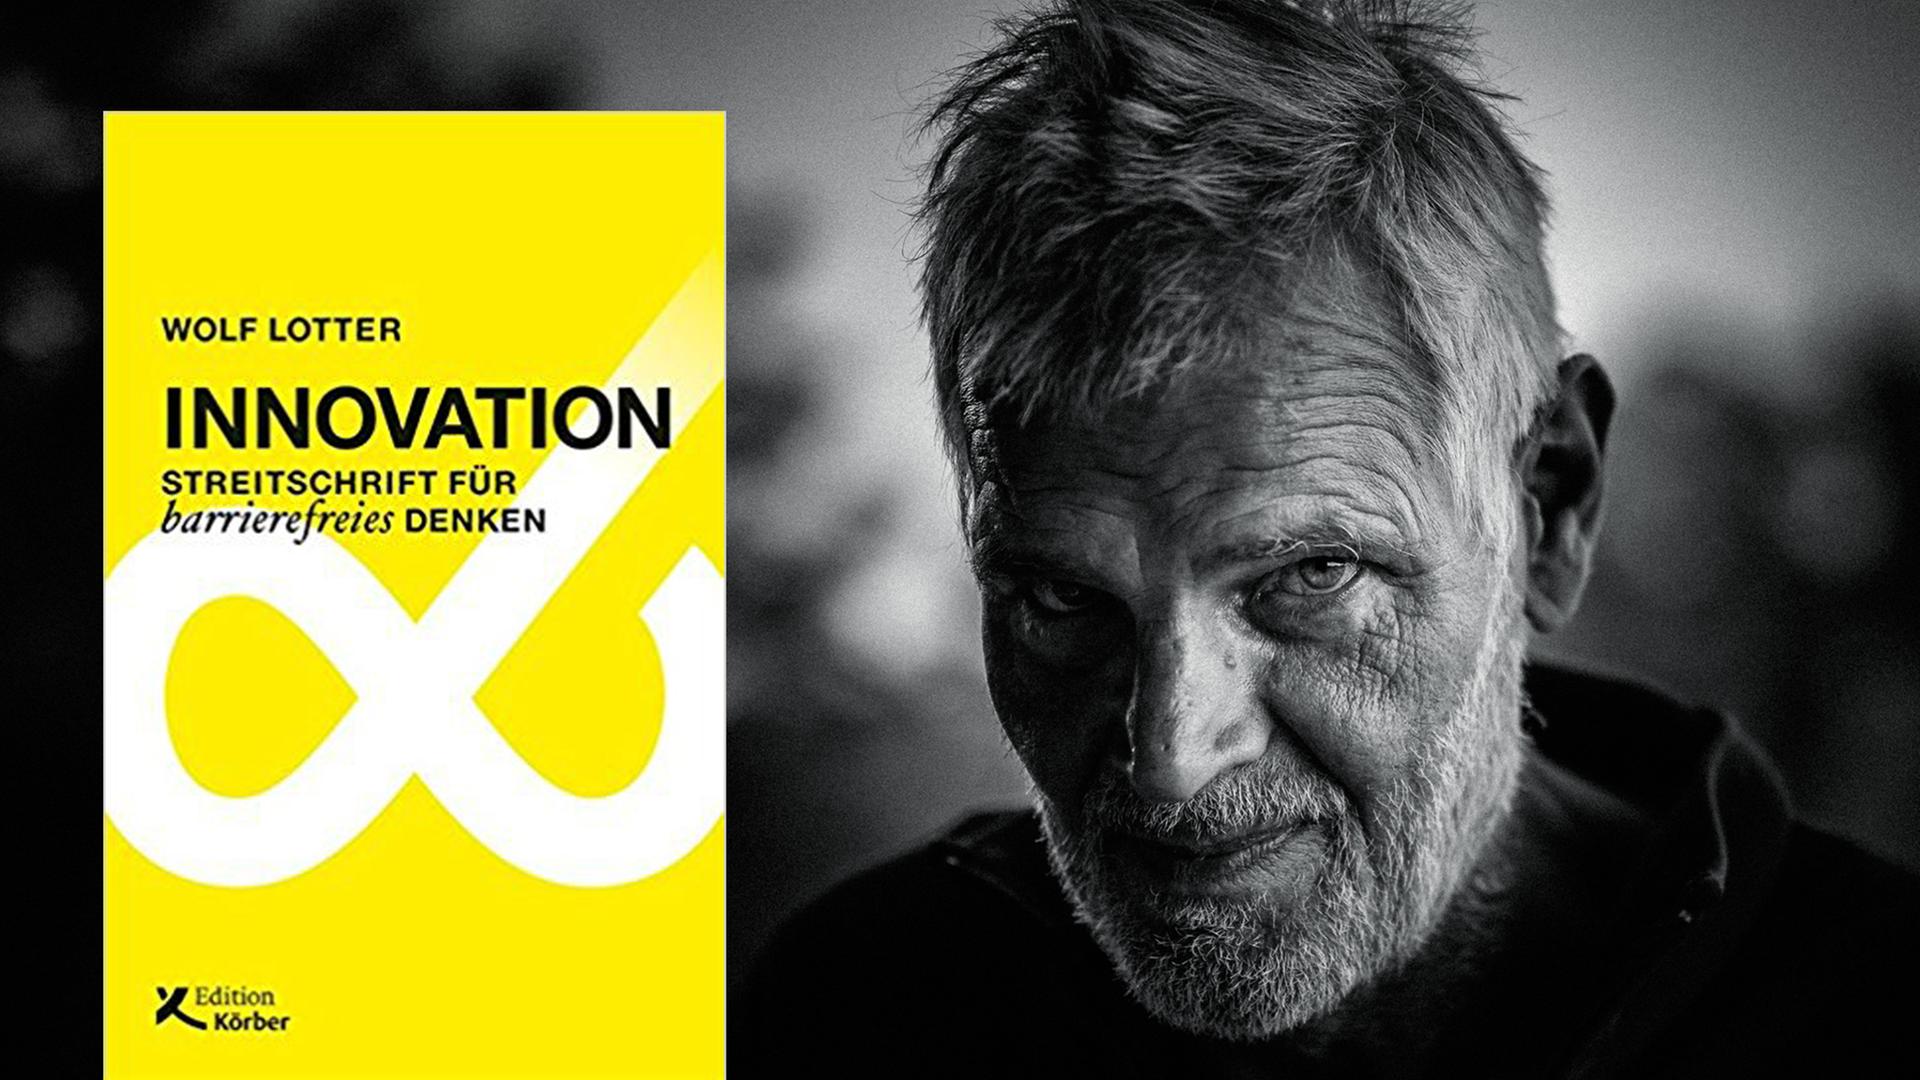 Buchcover: "Innovations" - ein älterer Mann kann auch innovativ denken und handeln. Zu sehen ist ein älterer Mann mit grauem Bart.